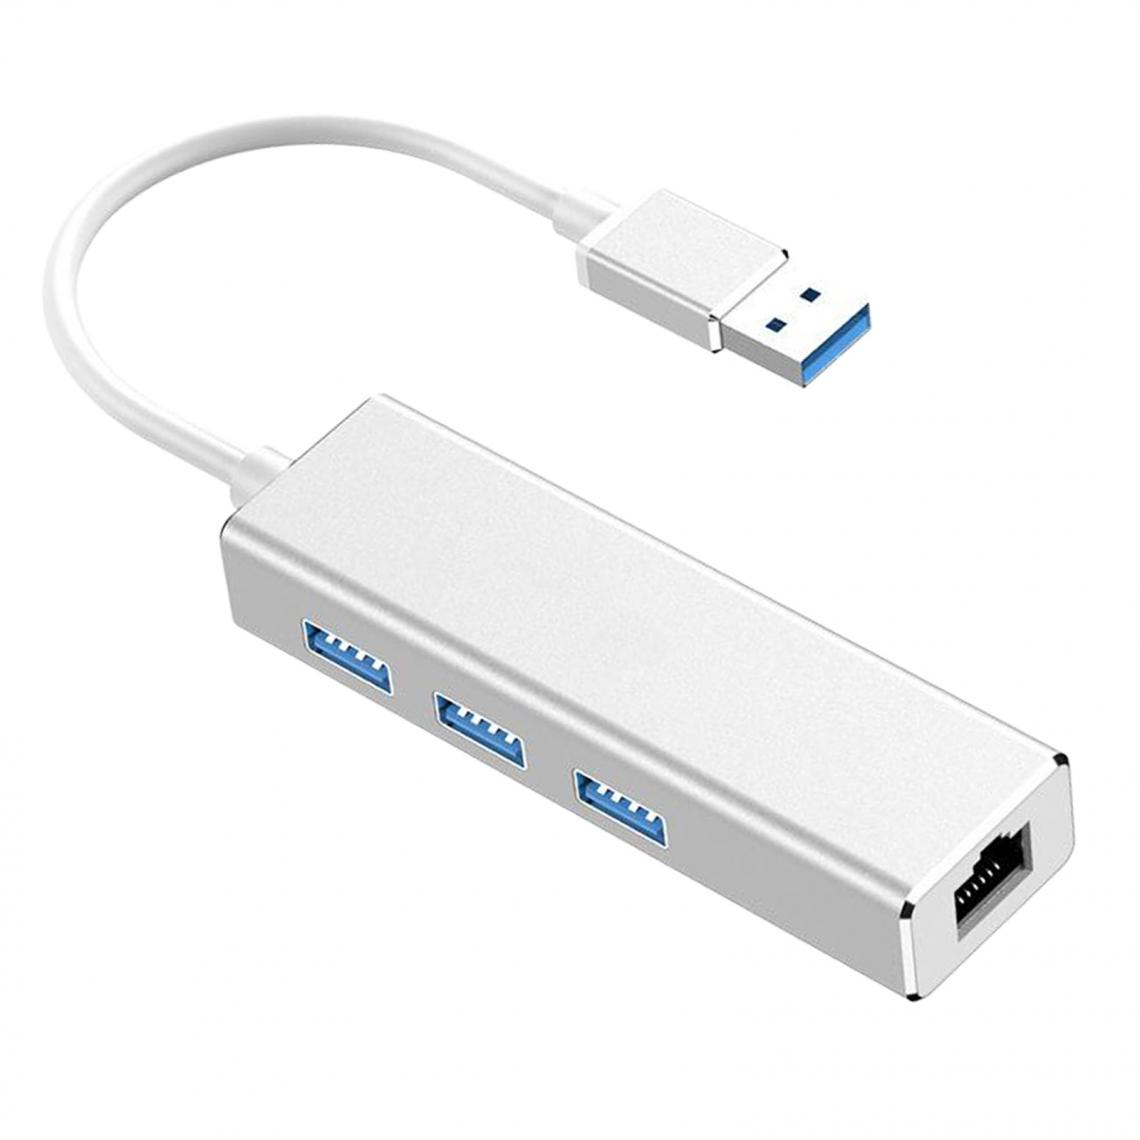 marque generique - Adaptateur Réseau USB 3.0 Gigabit Ethernet Adaptateur USB 1000Mbps Pour Ordinateur Portable Gris - Hub